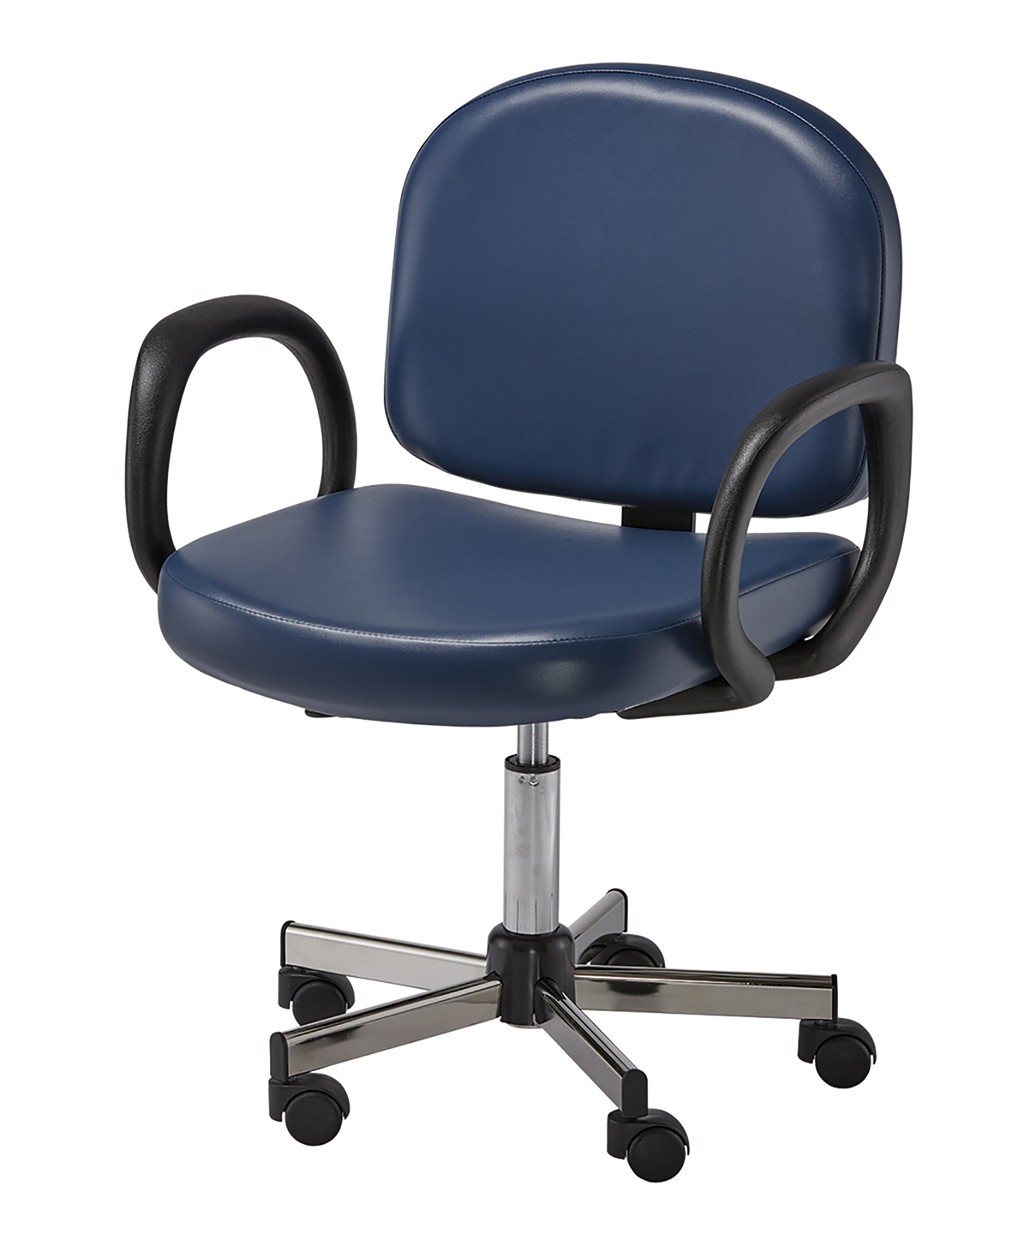 Pibbs 5492 Loop Desk Chair